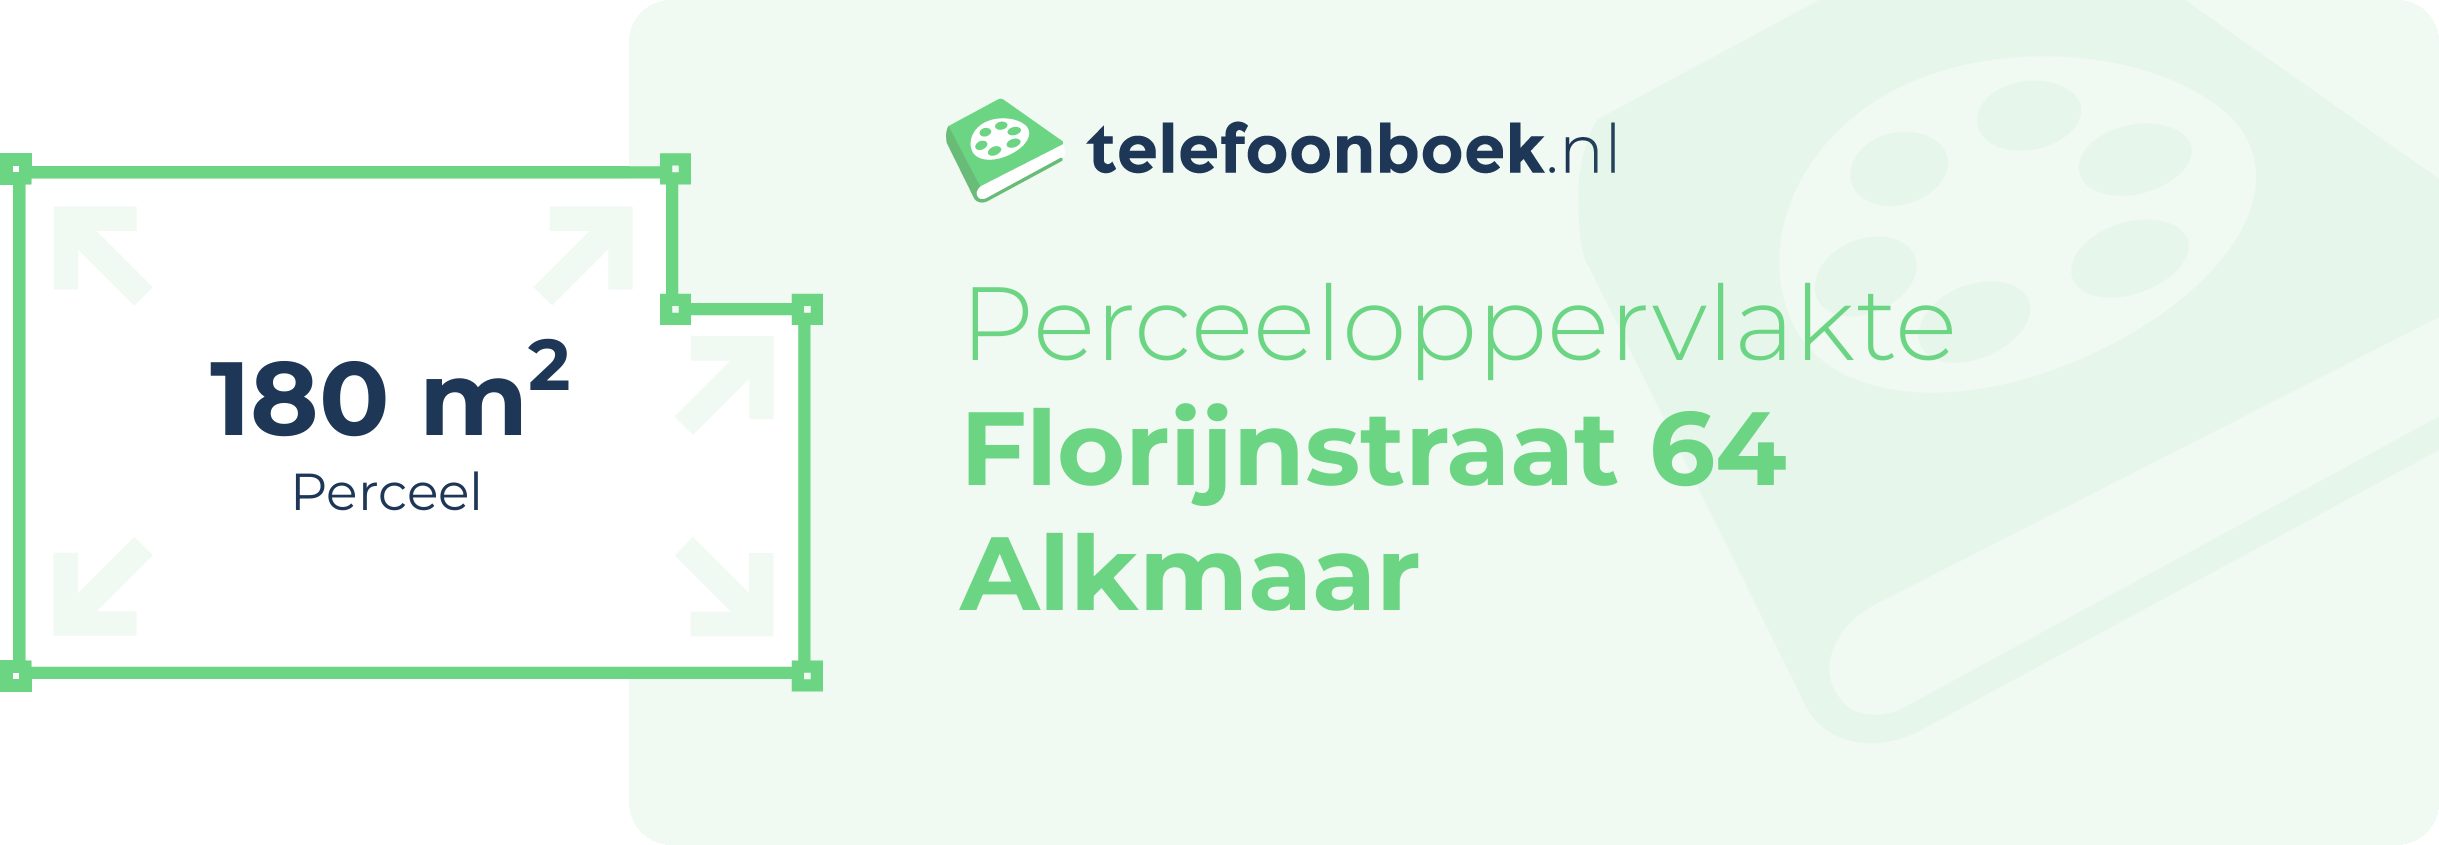 Perceeloppervlakte Florijnstraat 64 Alkmaar